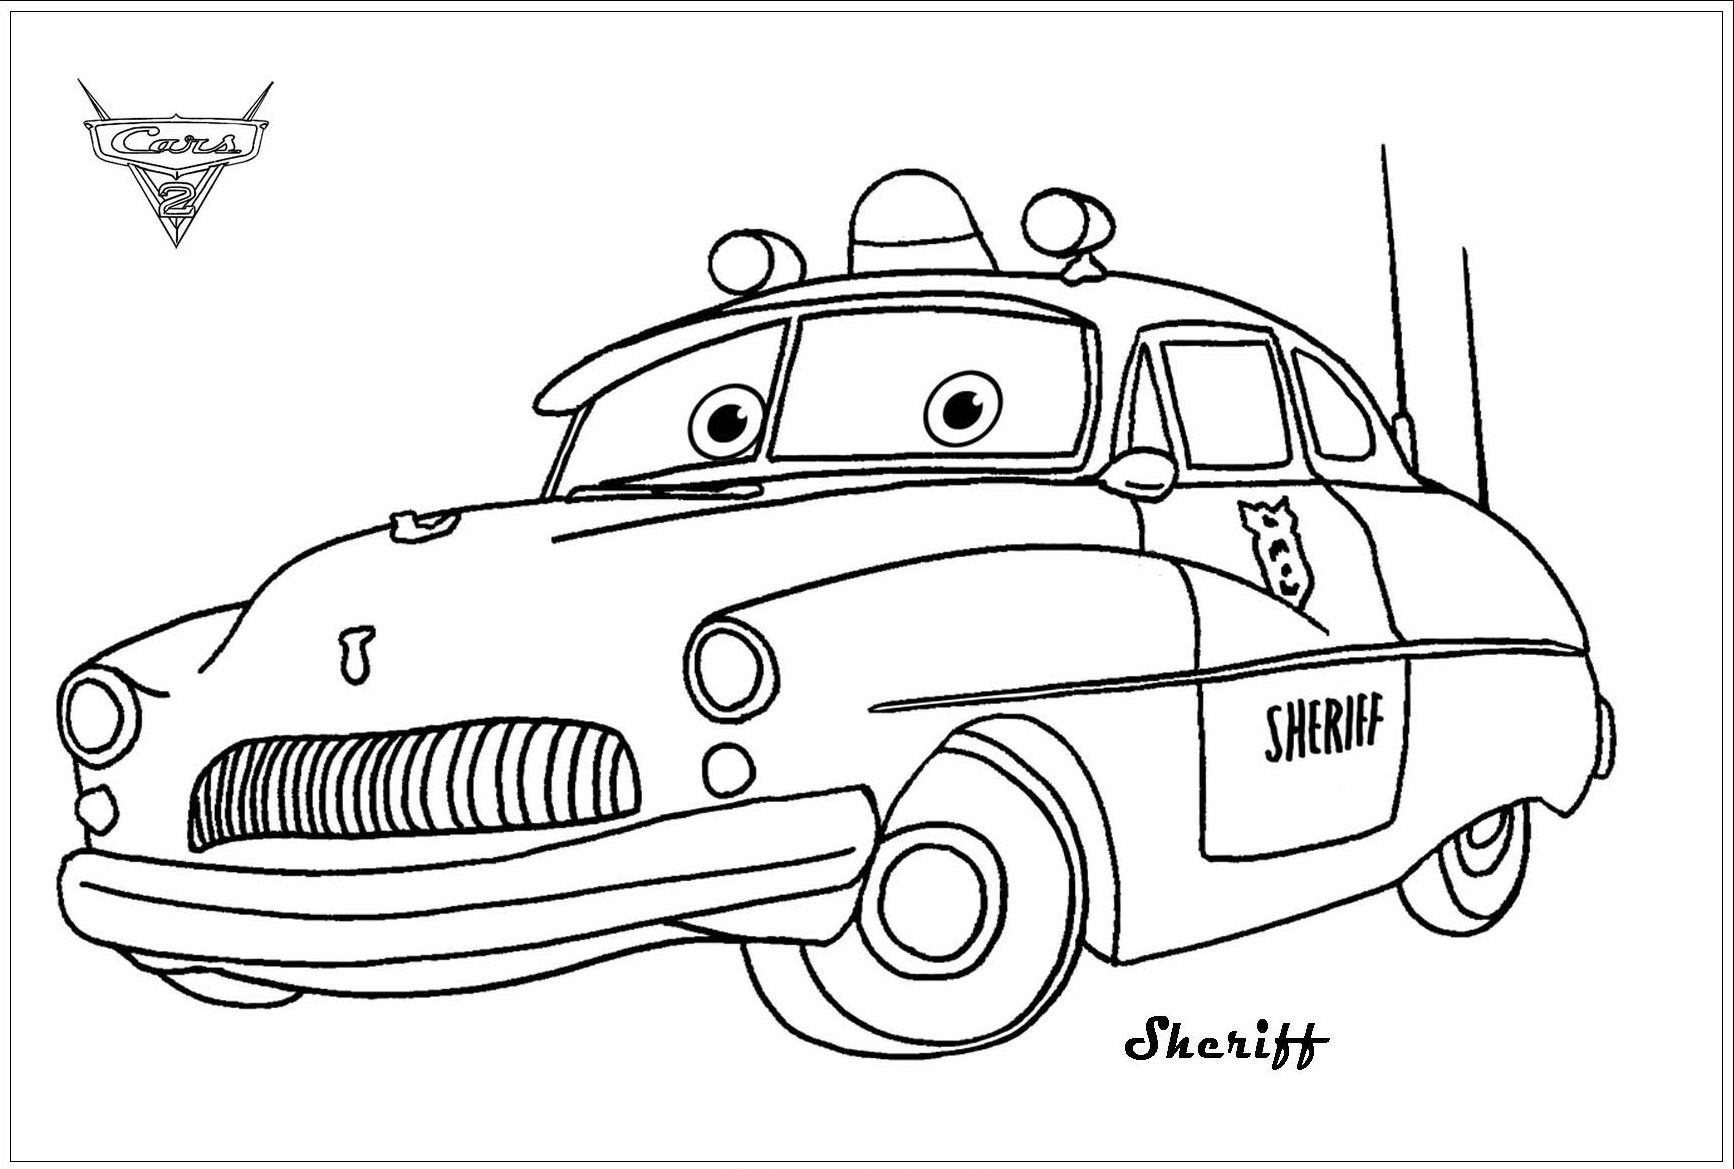 Sheriff, um belo carro da Disney/Pixar's Cars 2. Como figura de autoridade em Radiator Springs, o Sheriff prega Flash para acelerar após uma perseguição de carro.